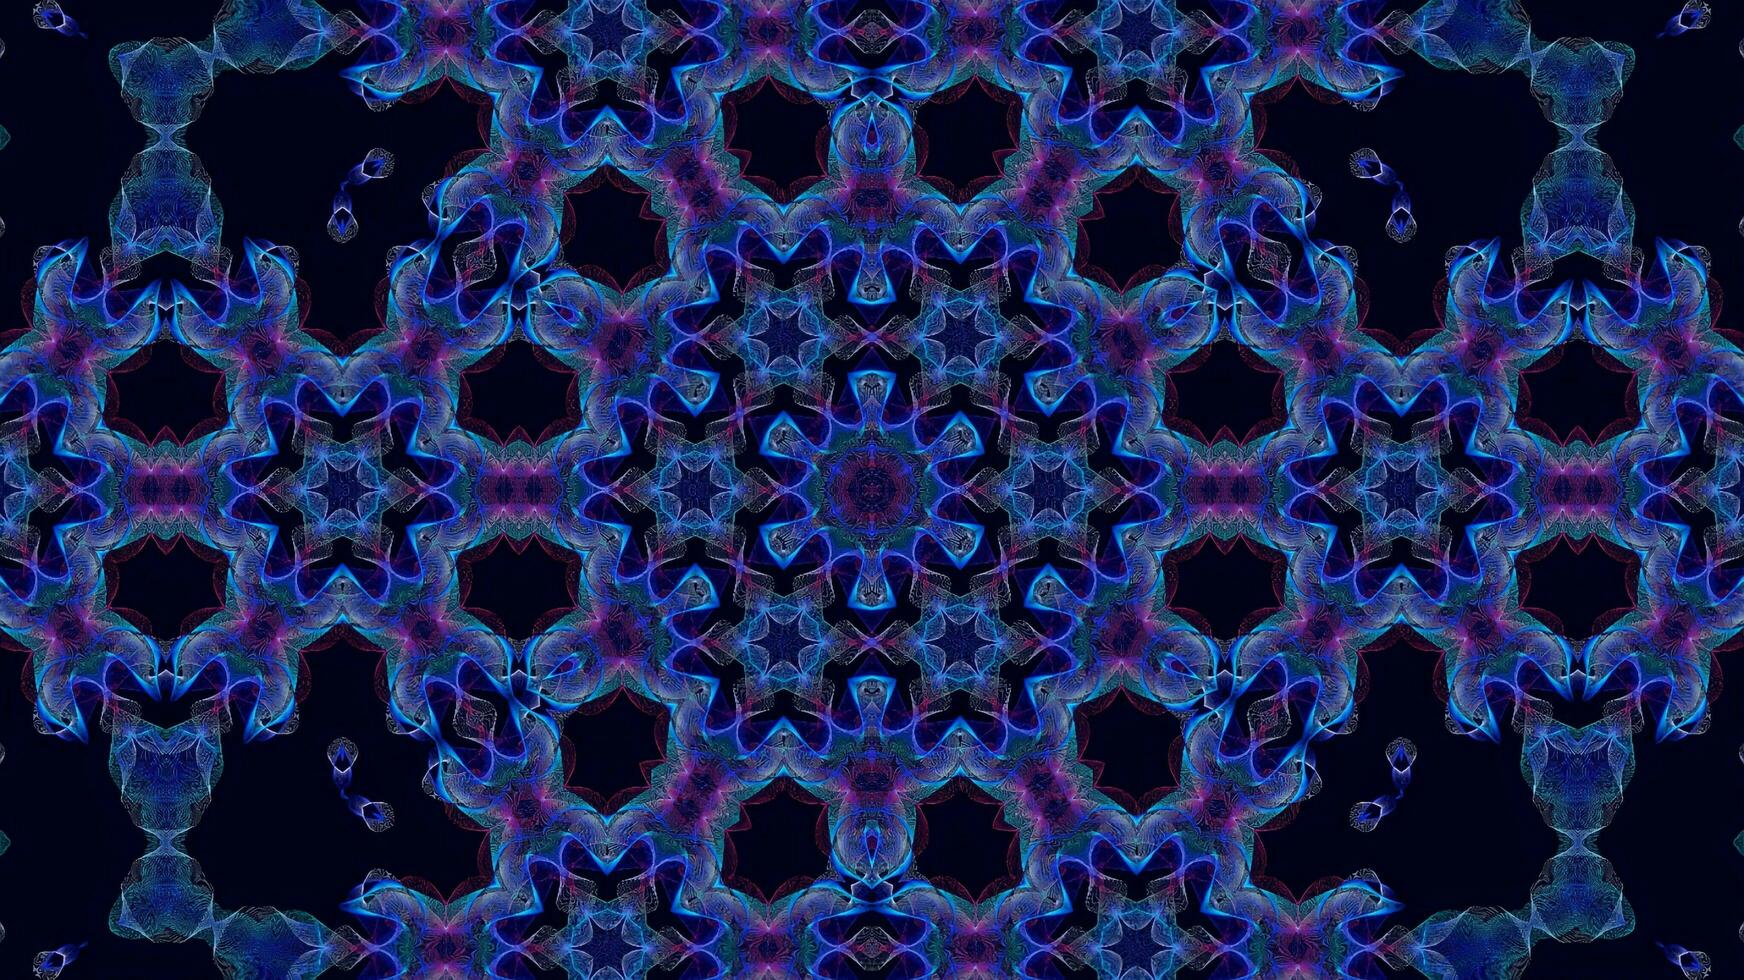 abstrakt bunt nahtlos Muster Kaleidoskop foto